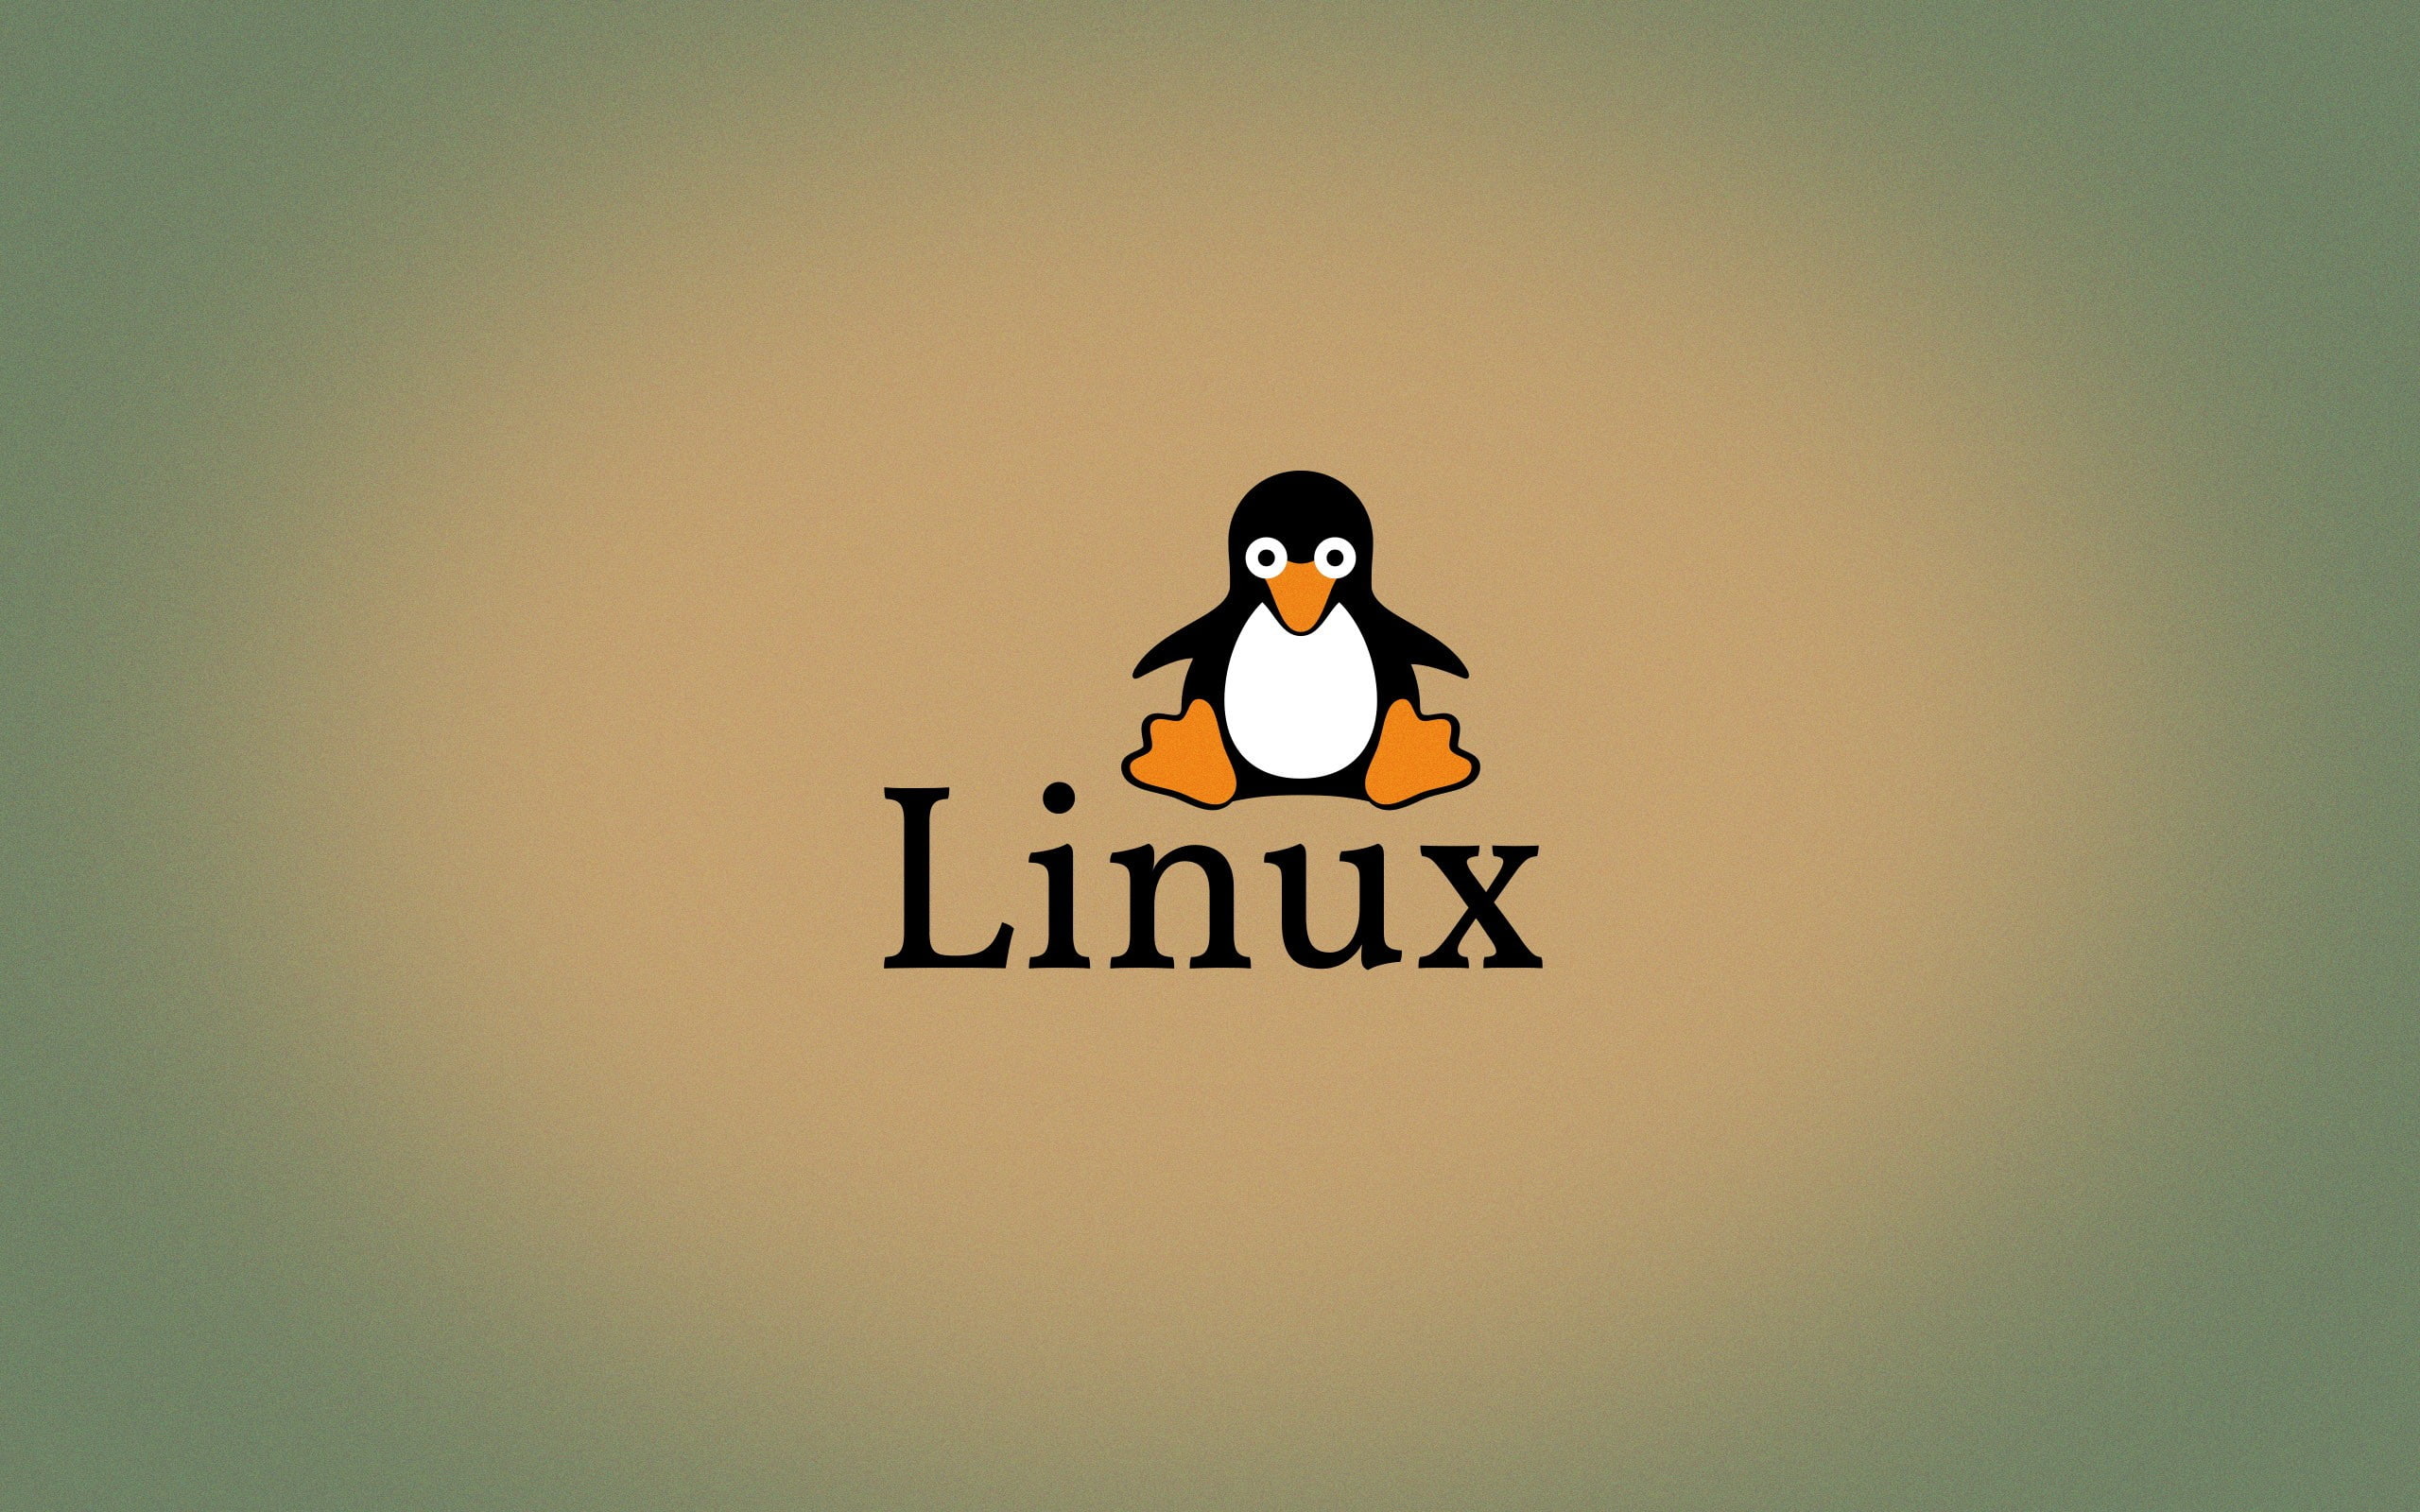 Linux, logo, open Source, Penguins, Tux